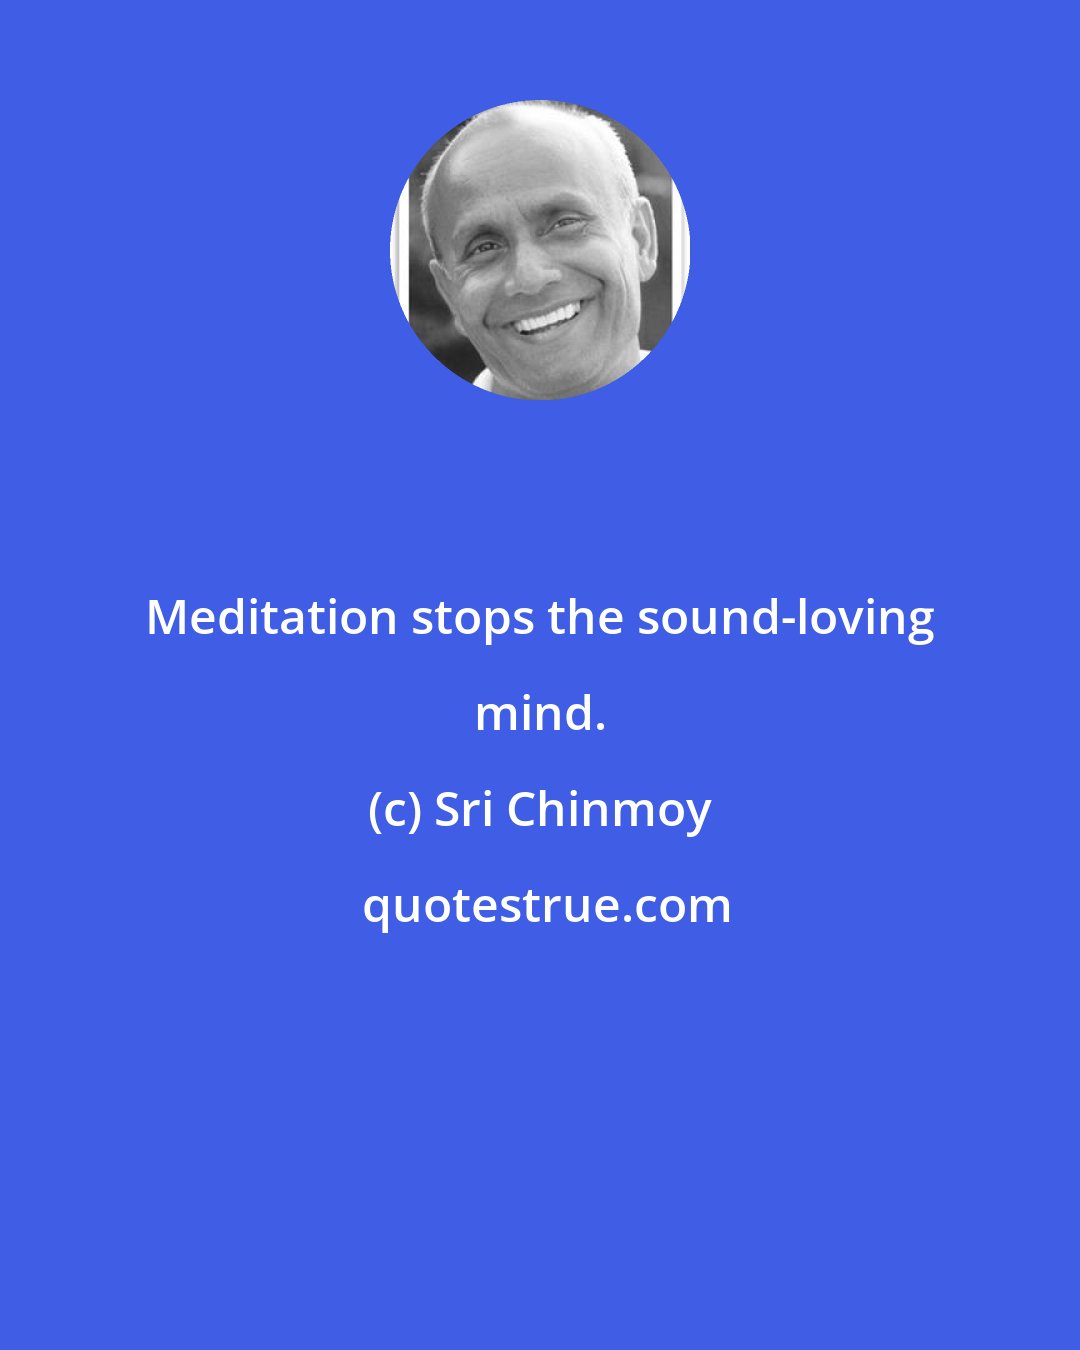 Sri Chinmoy: Meditation stops the sound-loving mind.